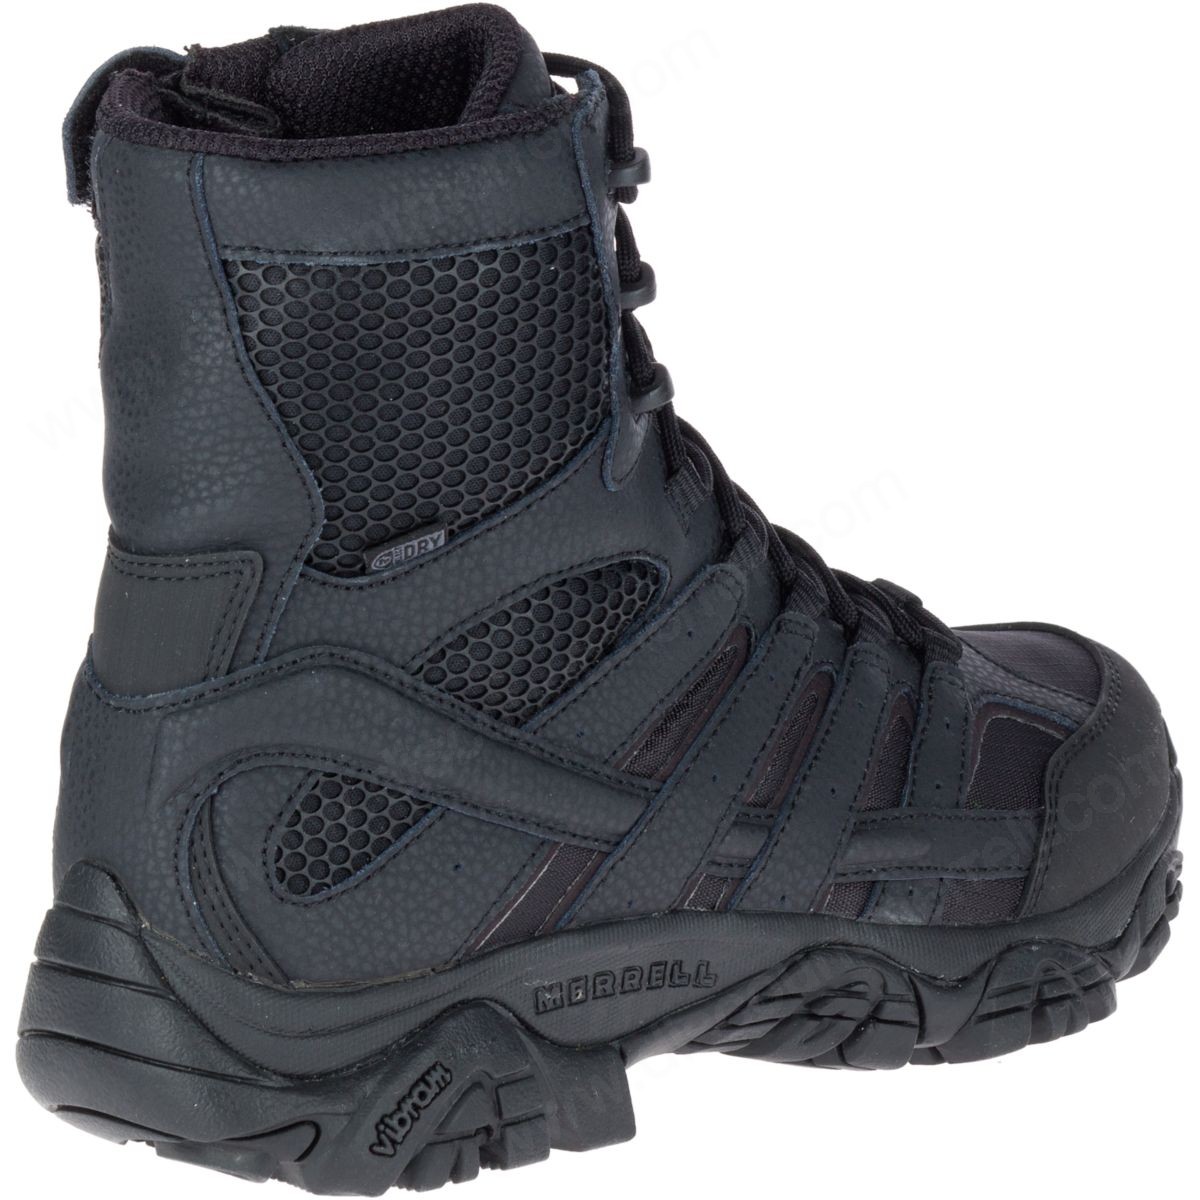 Merrell Men's Moab " Tactical Waterproof Boot Black - -7